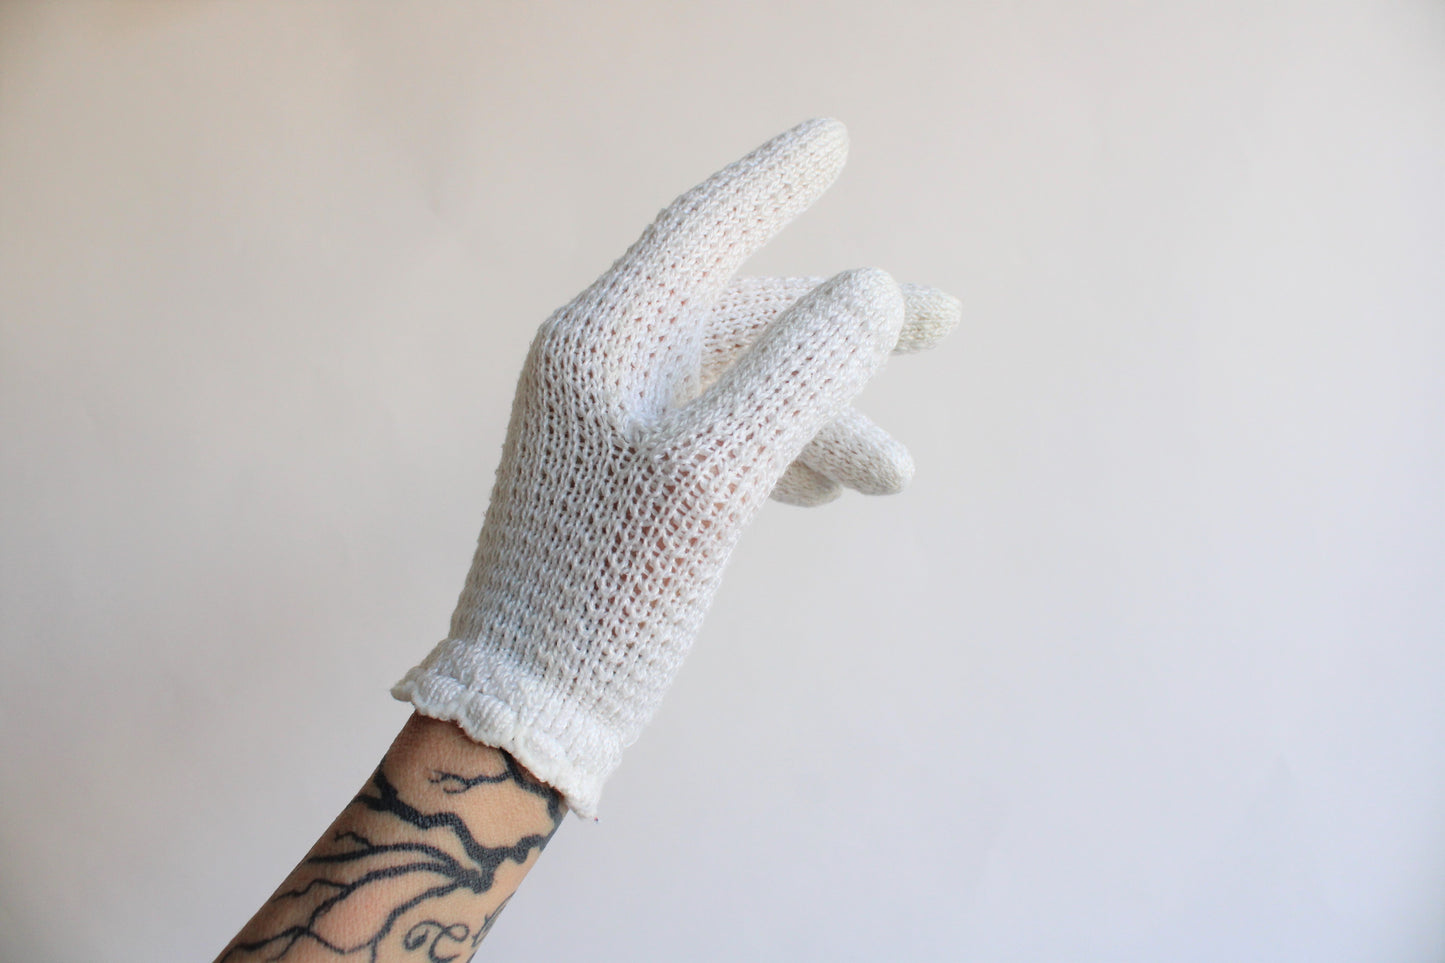 Vintage 1960s Winter White Knit Or Crochet Gloves